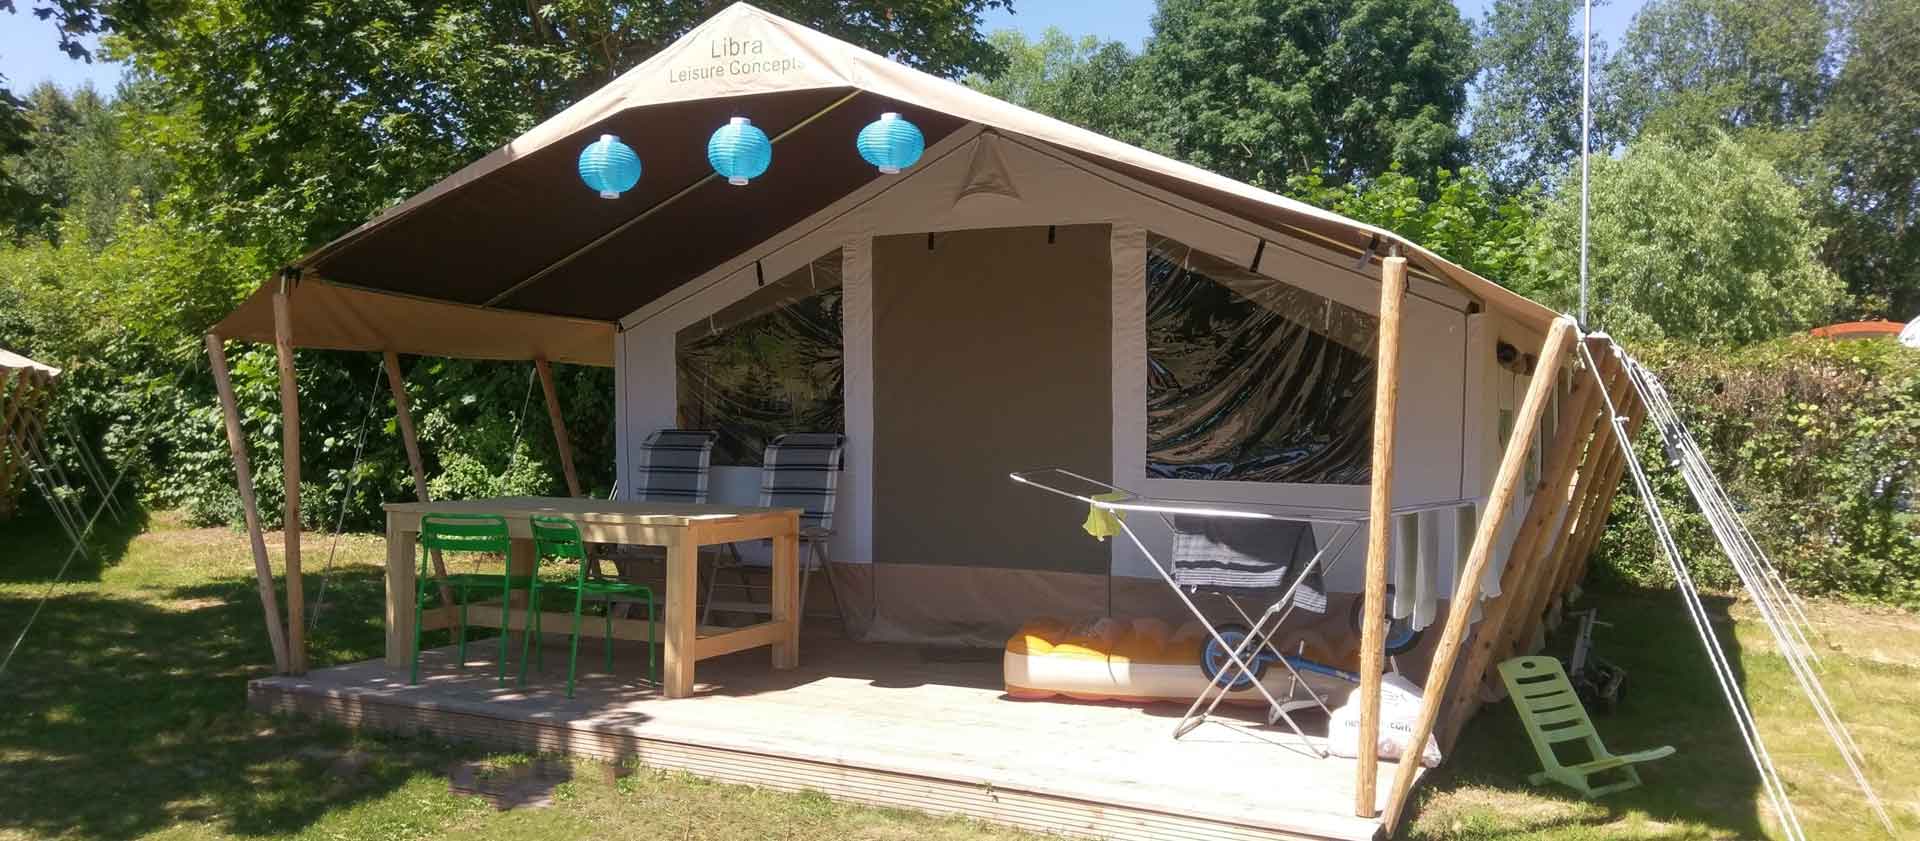 Komplett ausgestattetes Safari-Zelt